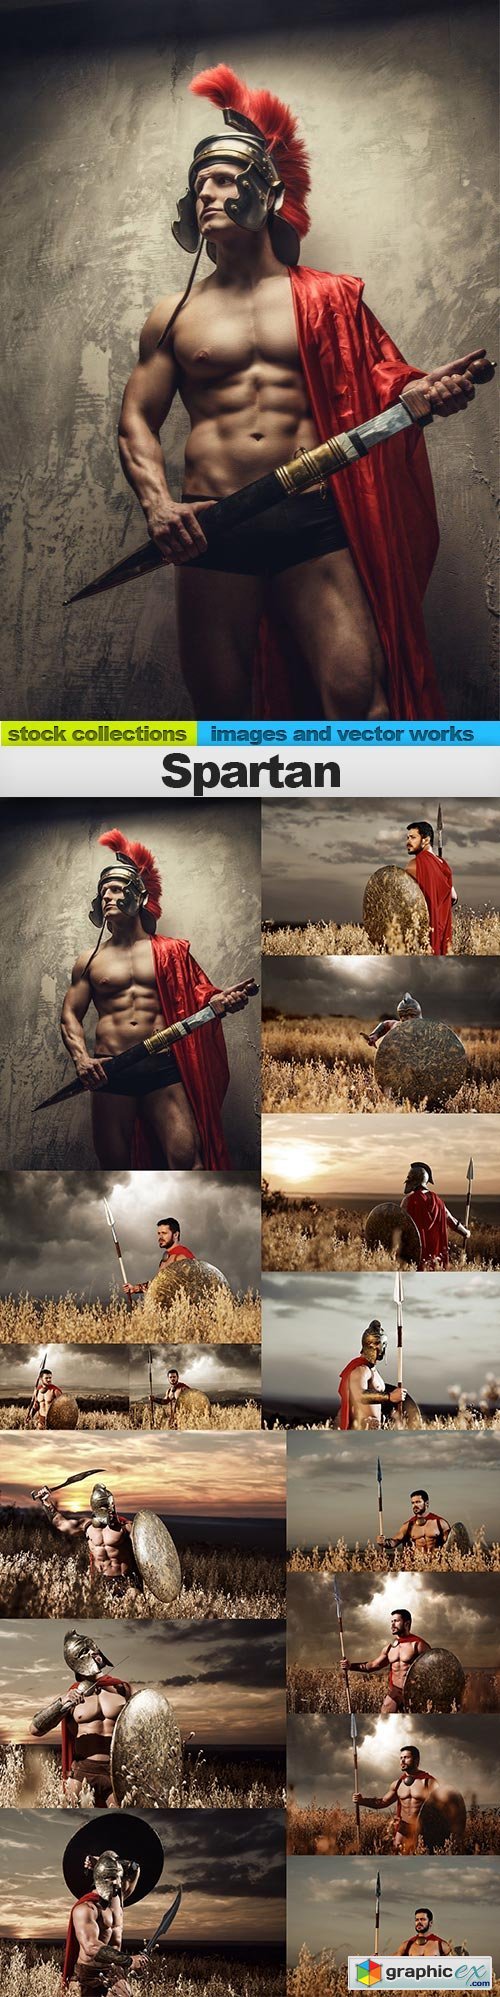 Spartan, 15 x UHQ JPEG